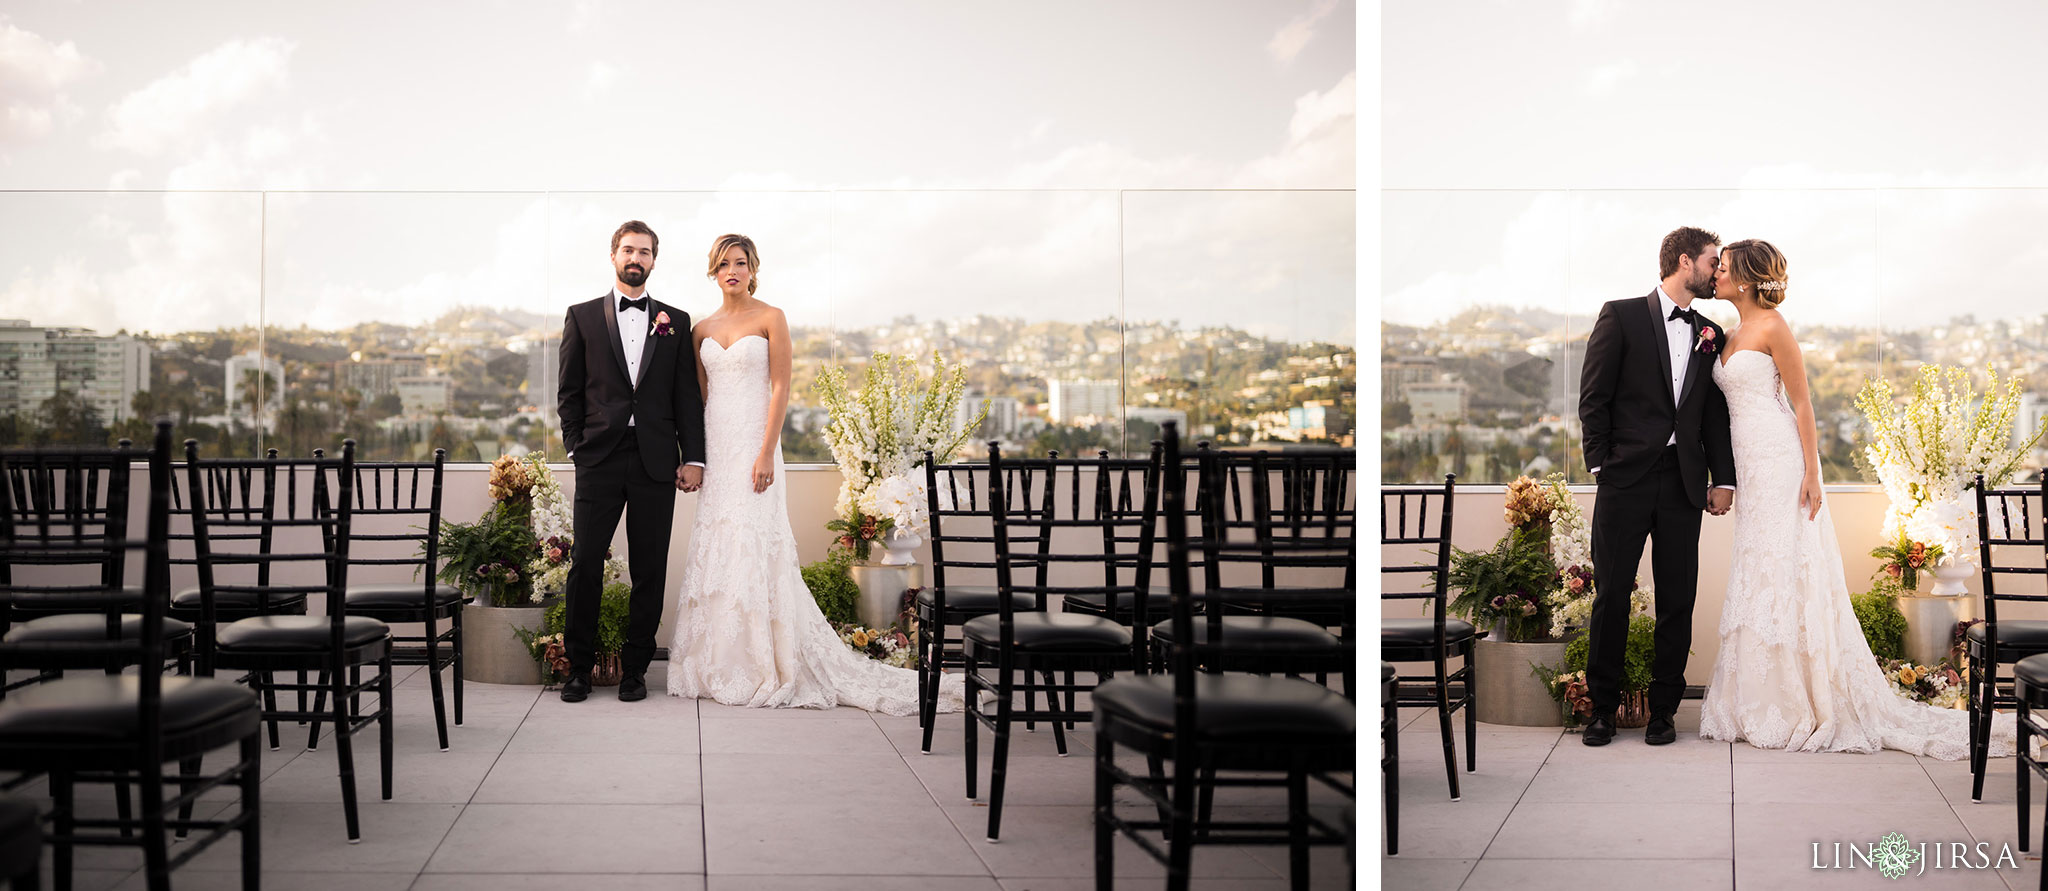 15 Kimpton La Peer Hotel West Hollywood Stylized Wedding Photography